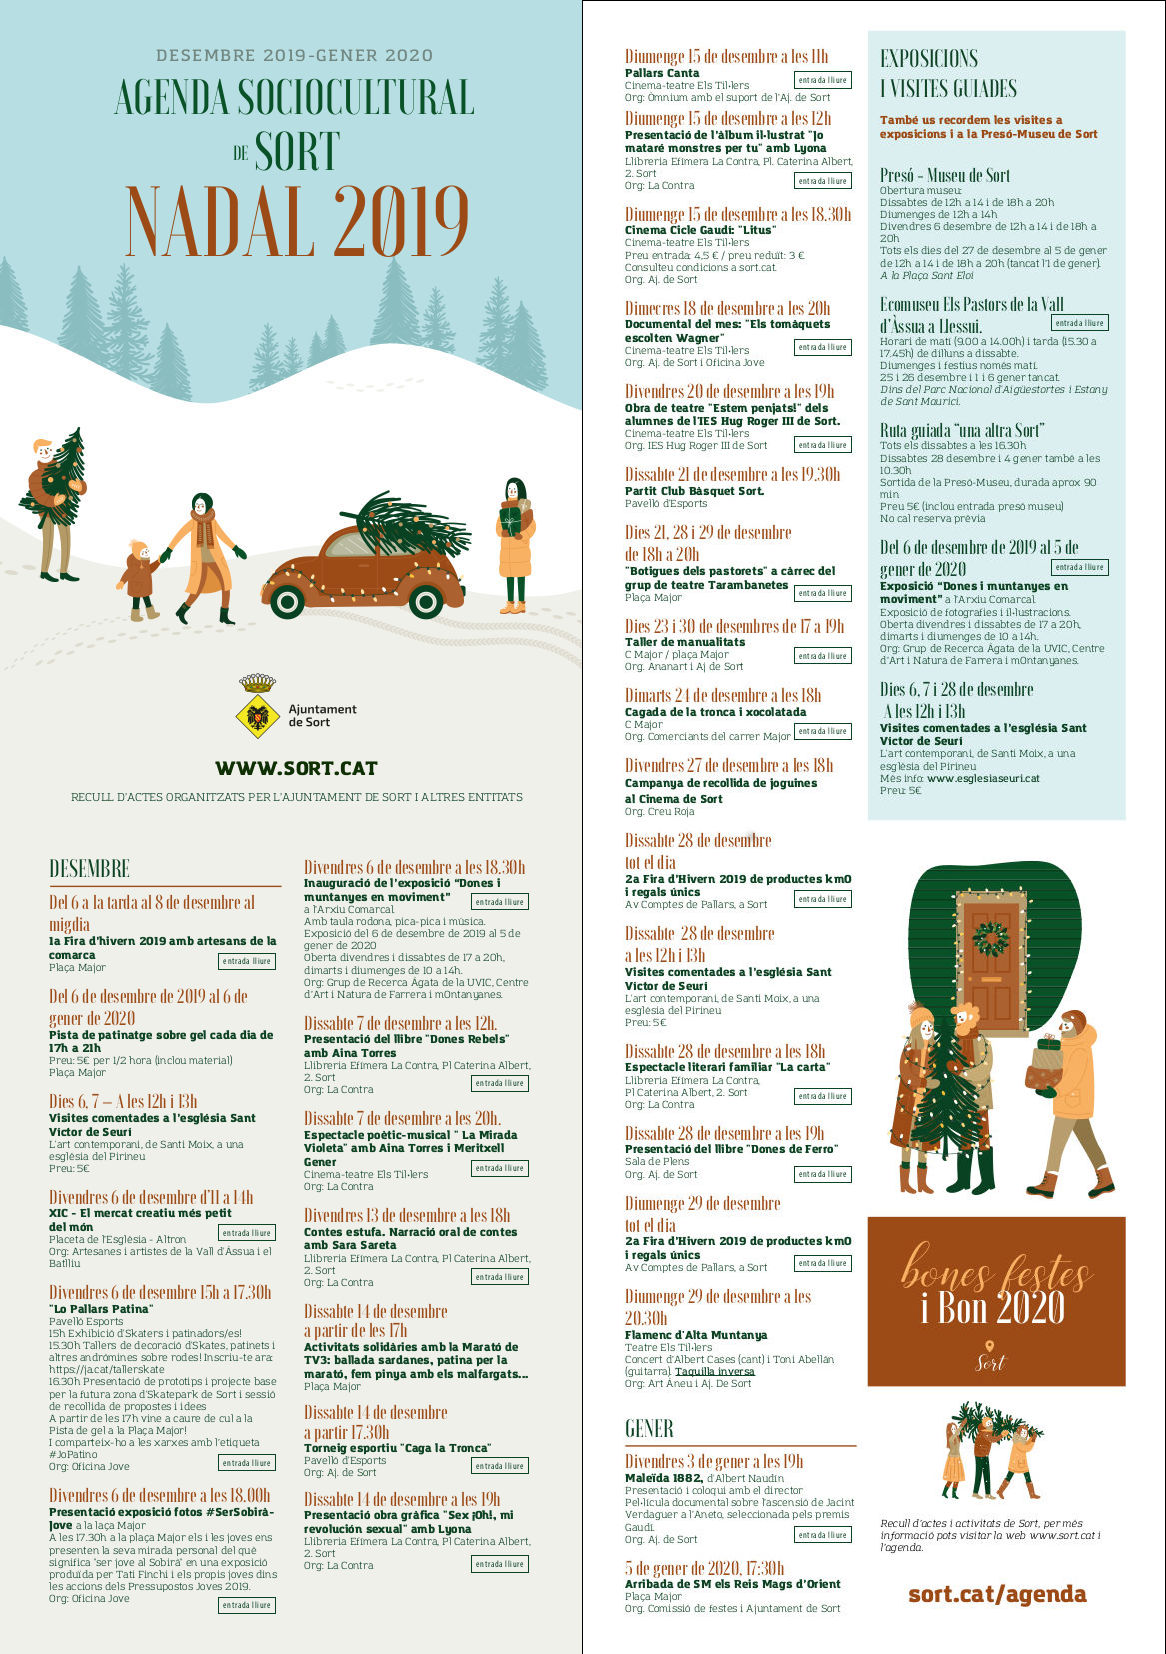 Cartell amb totes les activitats que hi ha durant el Nadal 2019 al municipi de Sort